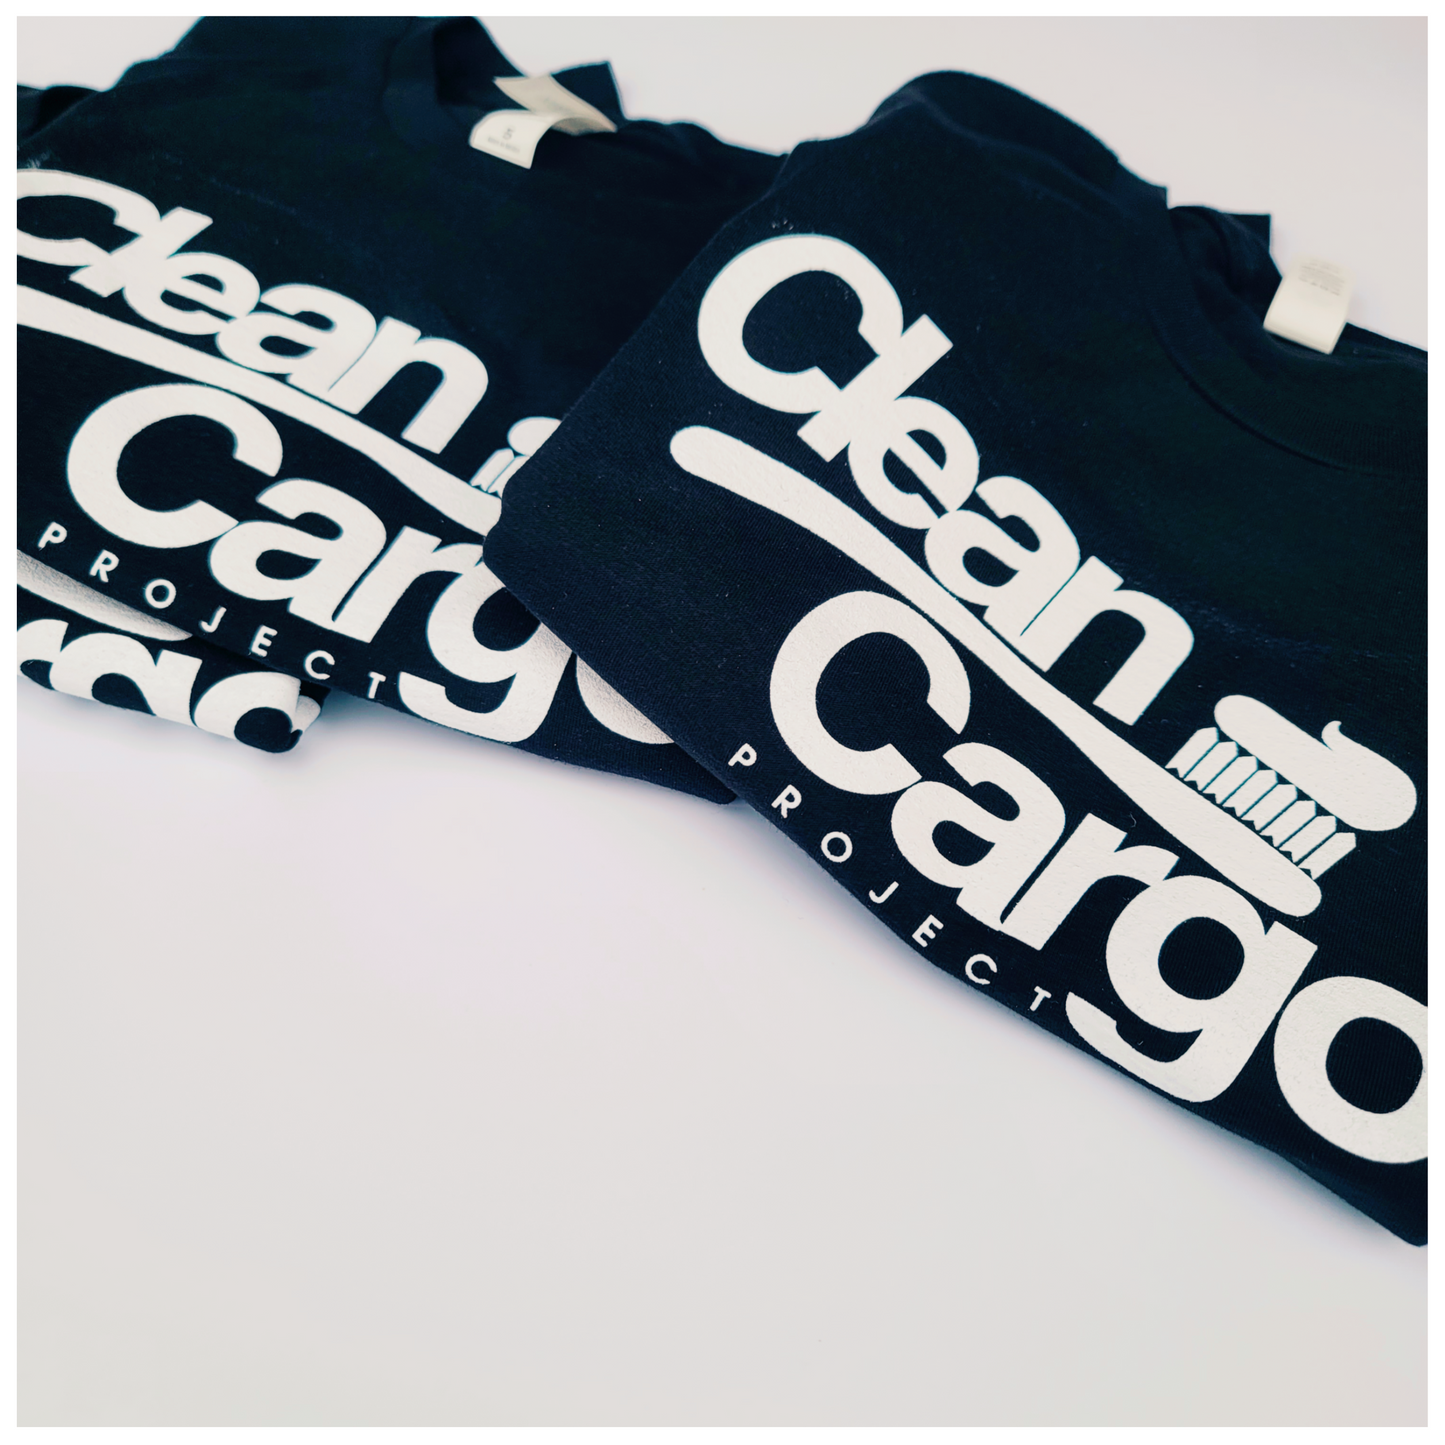 Signature Cargo T-shirt